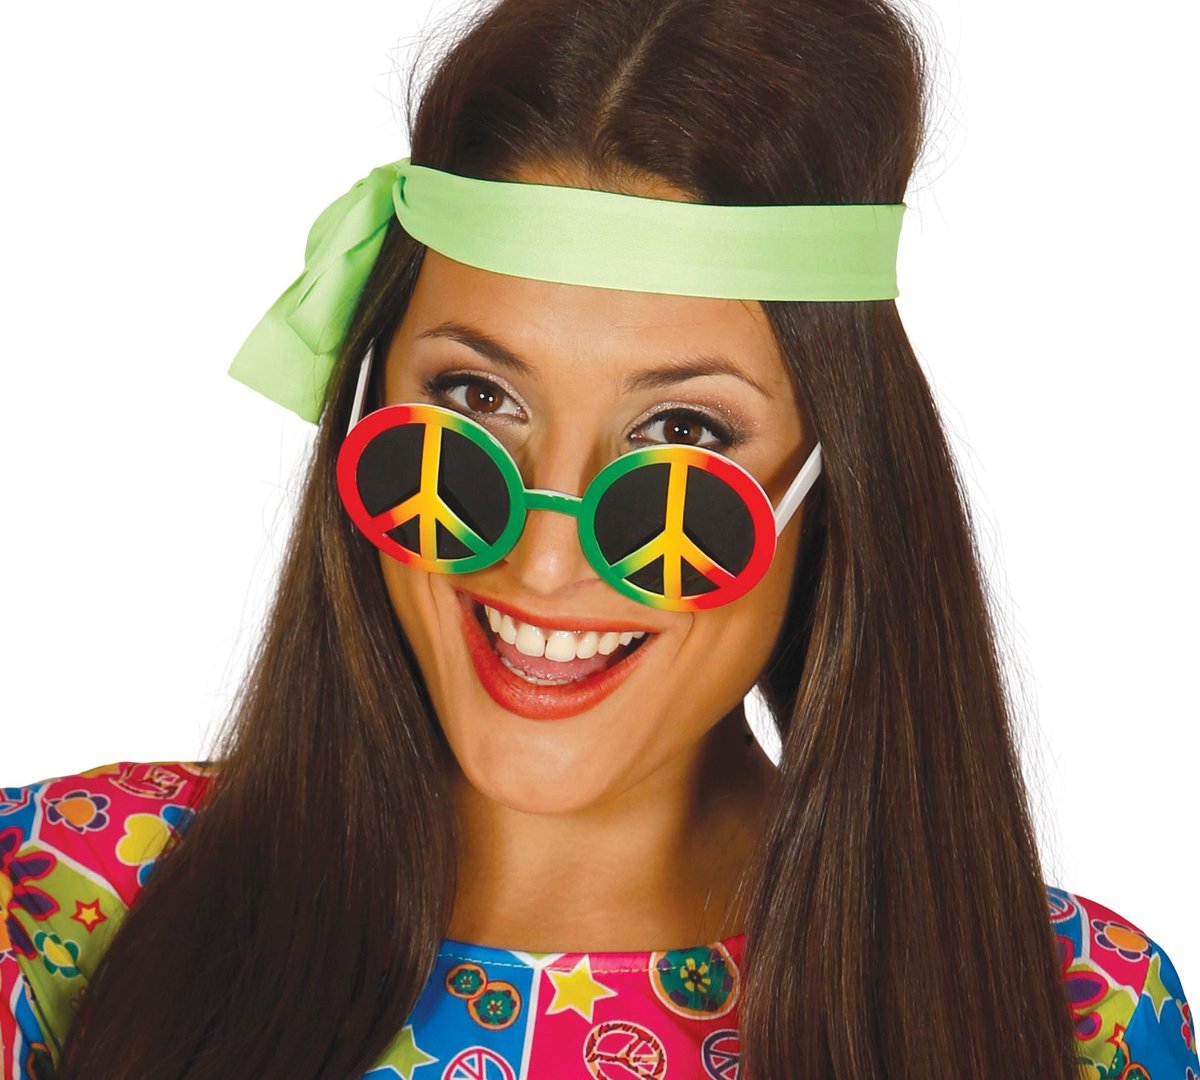 Fiestas Guirca - Hippie bril Rood/groen/geel